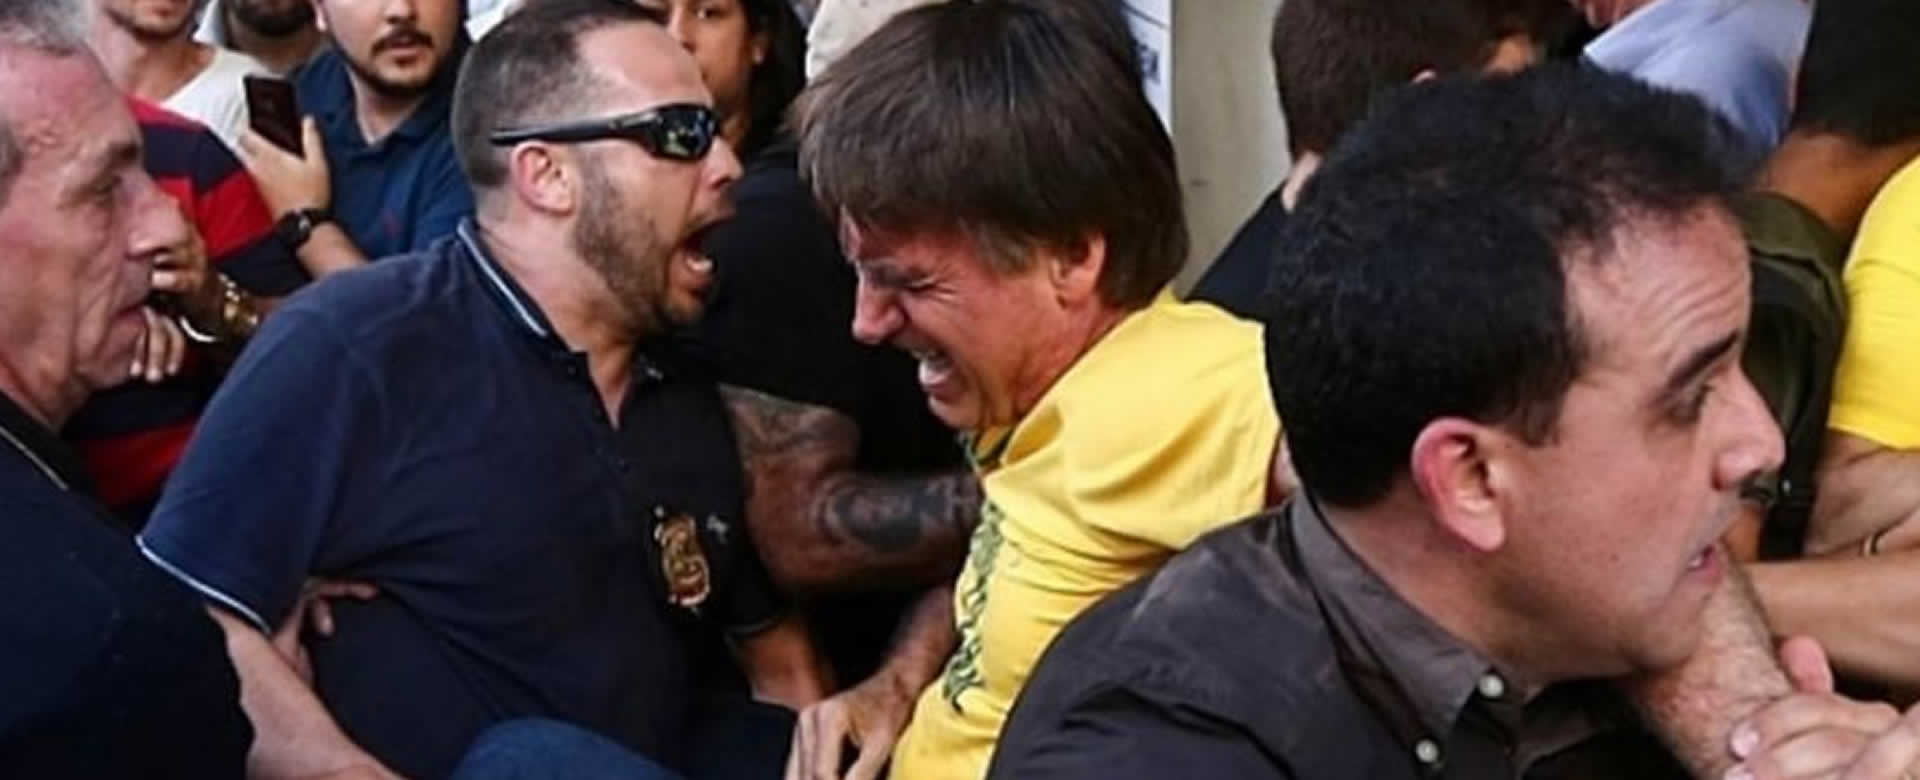 Jair Bolsonaro Candidato presidencial en Brasil fue apuñalado durante un acto de campaña